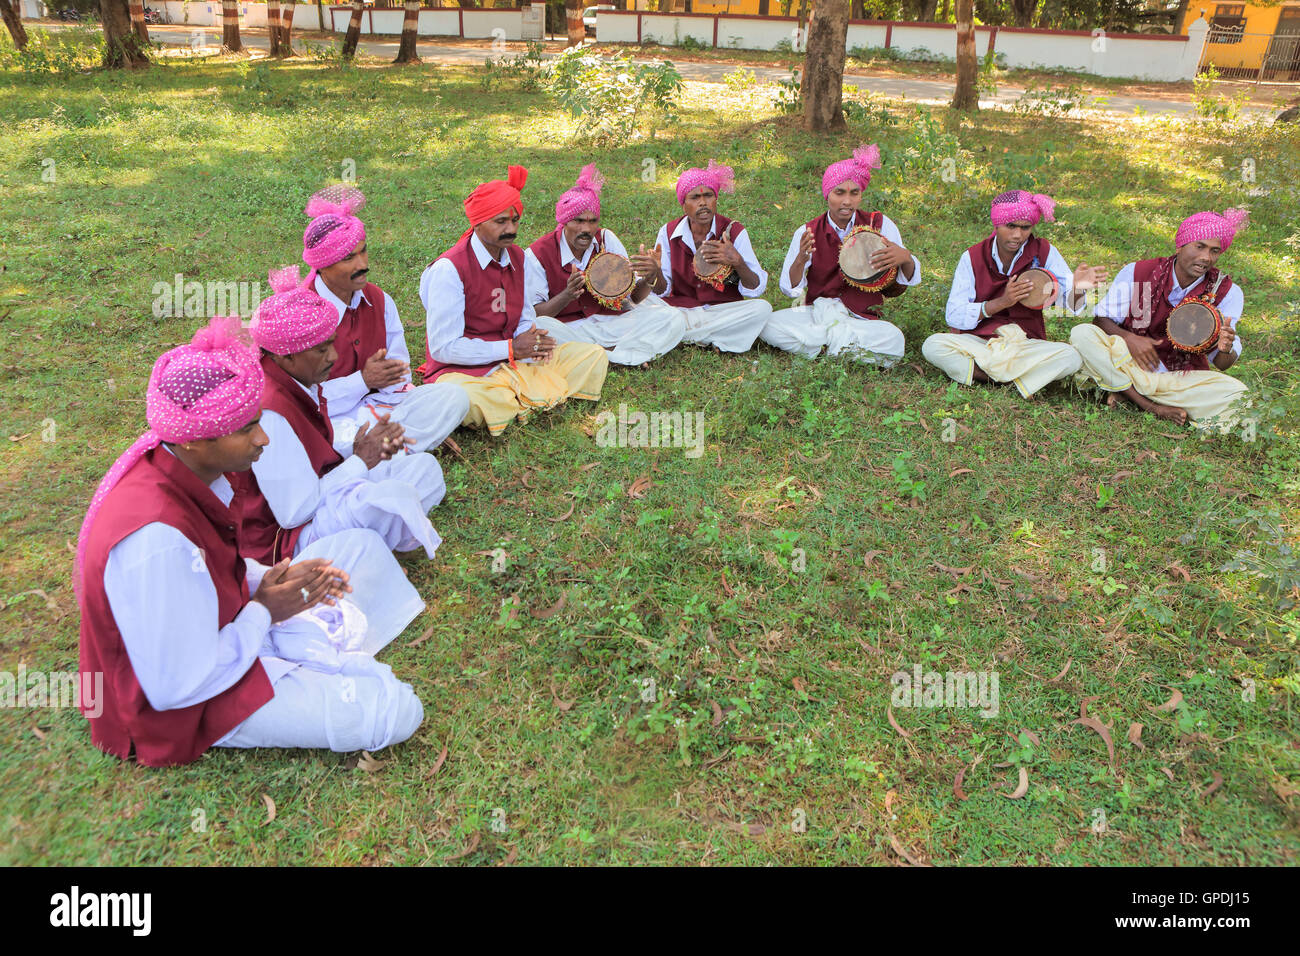 Musiciens tribaux jouant de la musique folk, Jagdalpur, Bastar, Chhattisgarh, Inde, Asie Banque D'Images